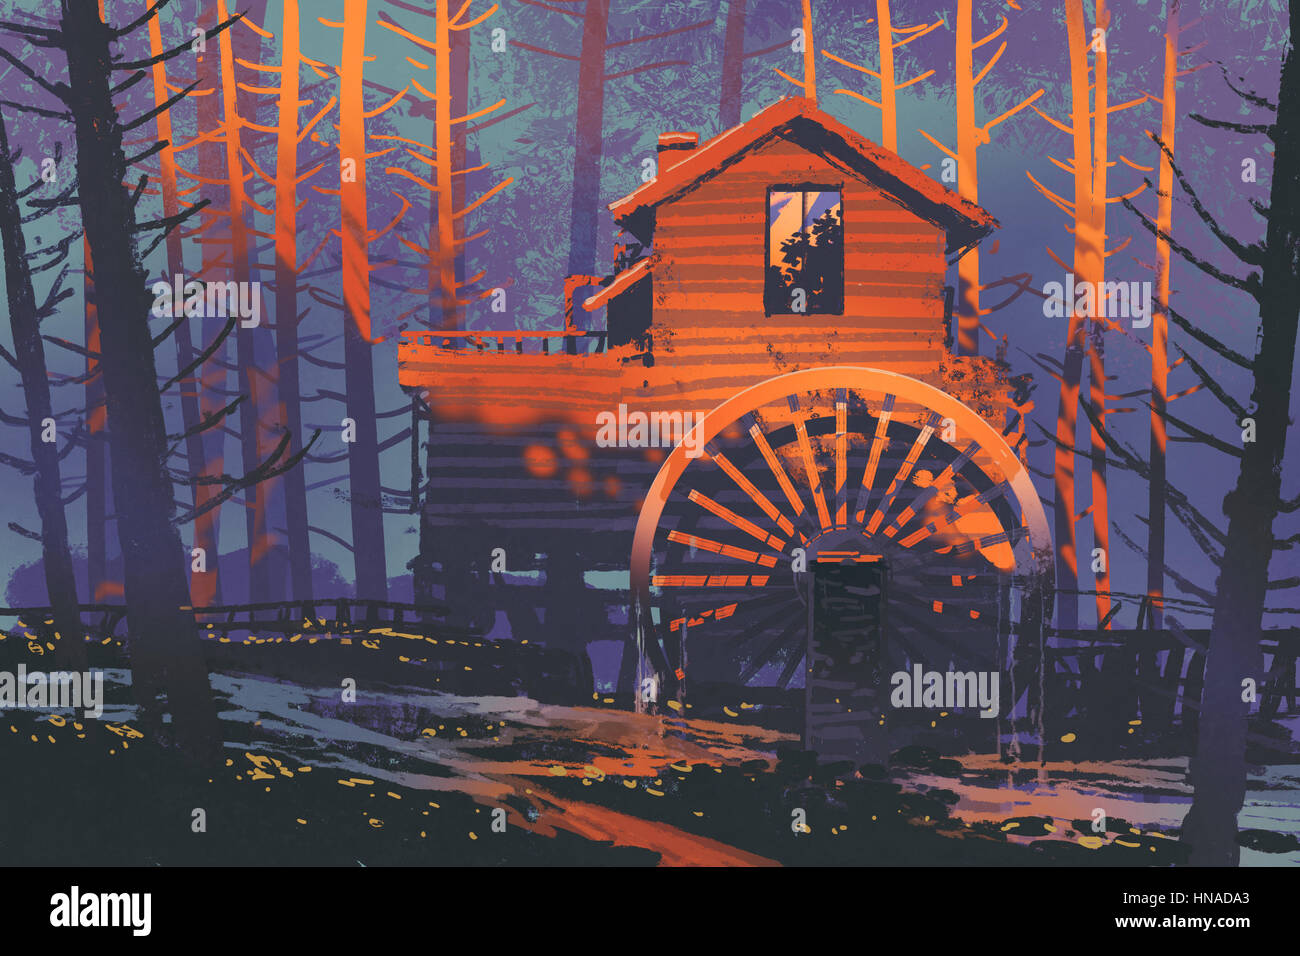 Holzhaus mit einem Wasserrad im Wald bei Sonnenuntergang, Illustration Malerei Stockfoto